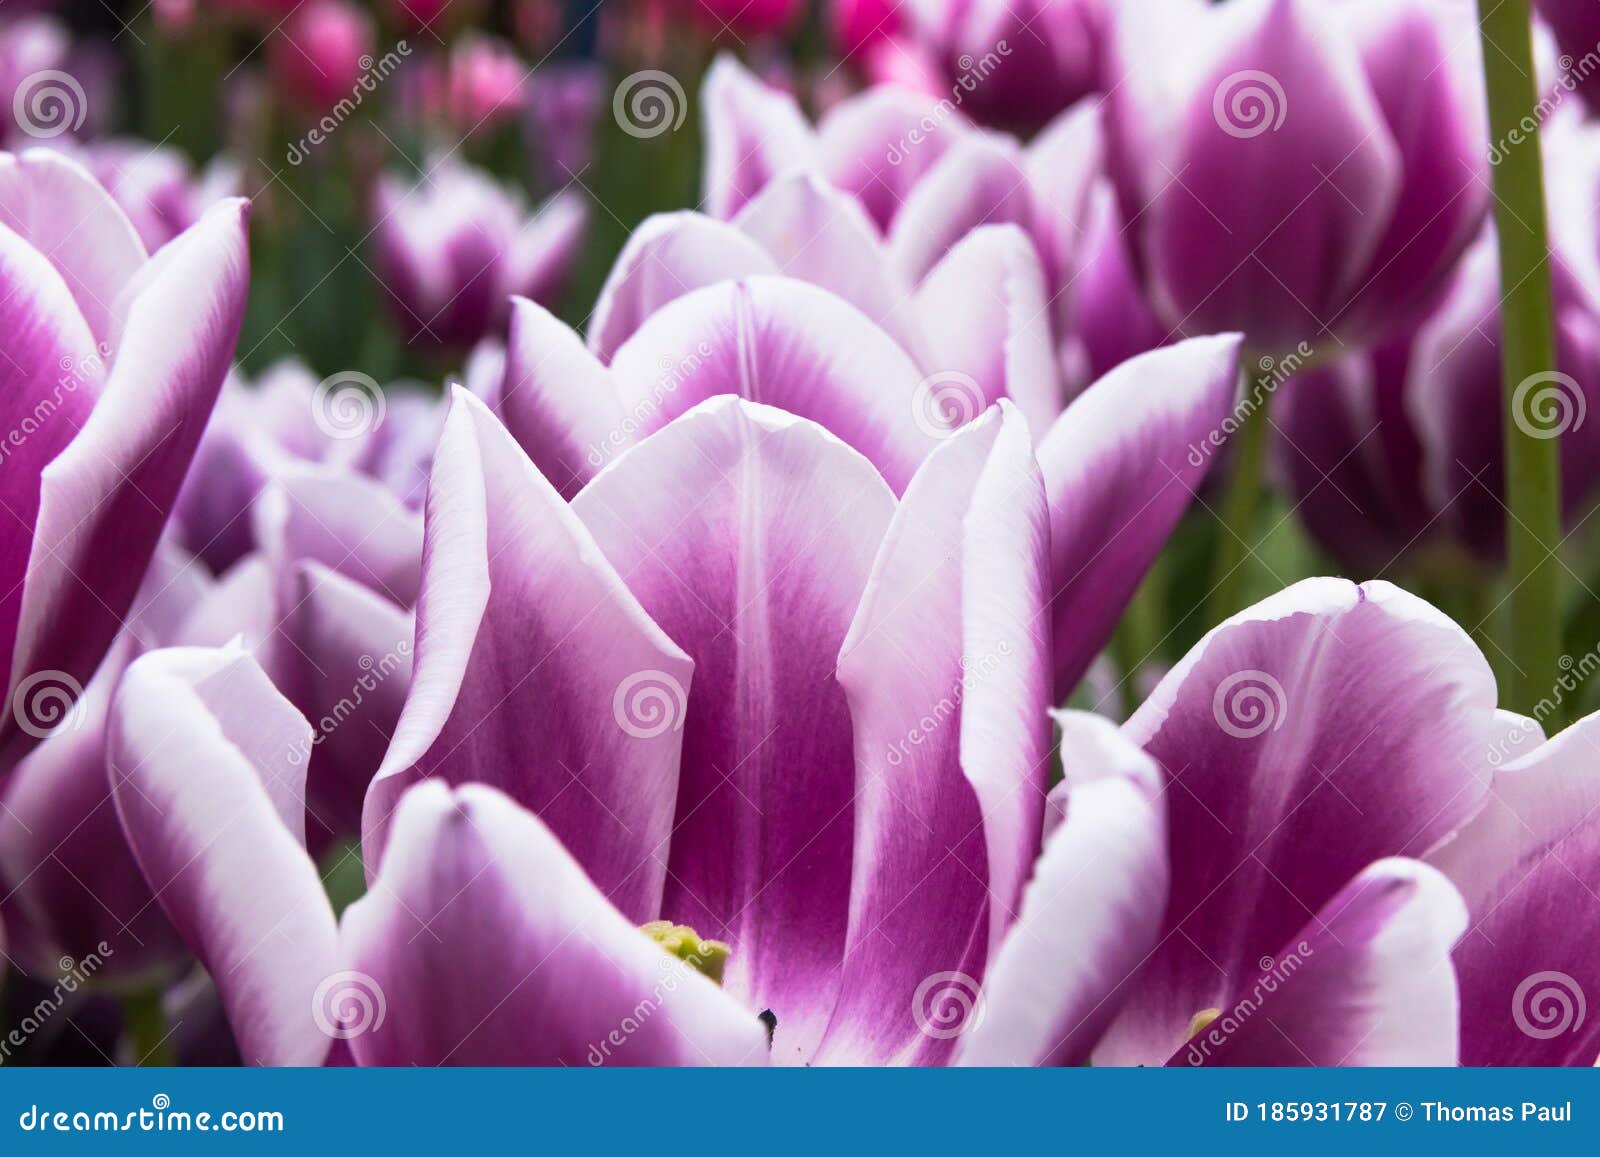 Flores De Tulipán Violeta Y Blanca Imagen de archivo - Imagen de flores,  recorrido: 185931787